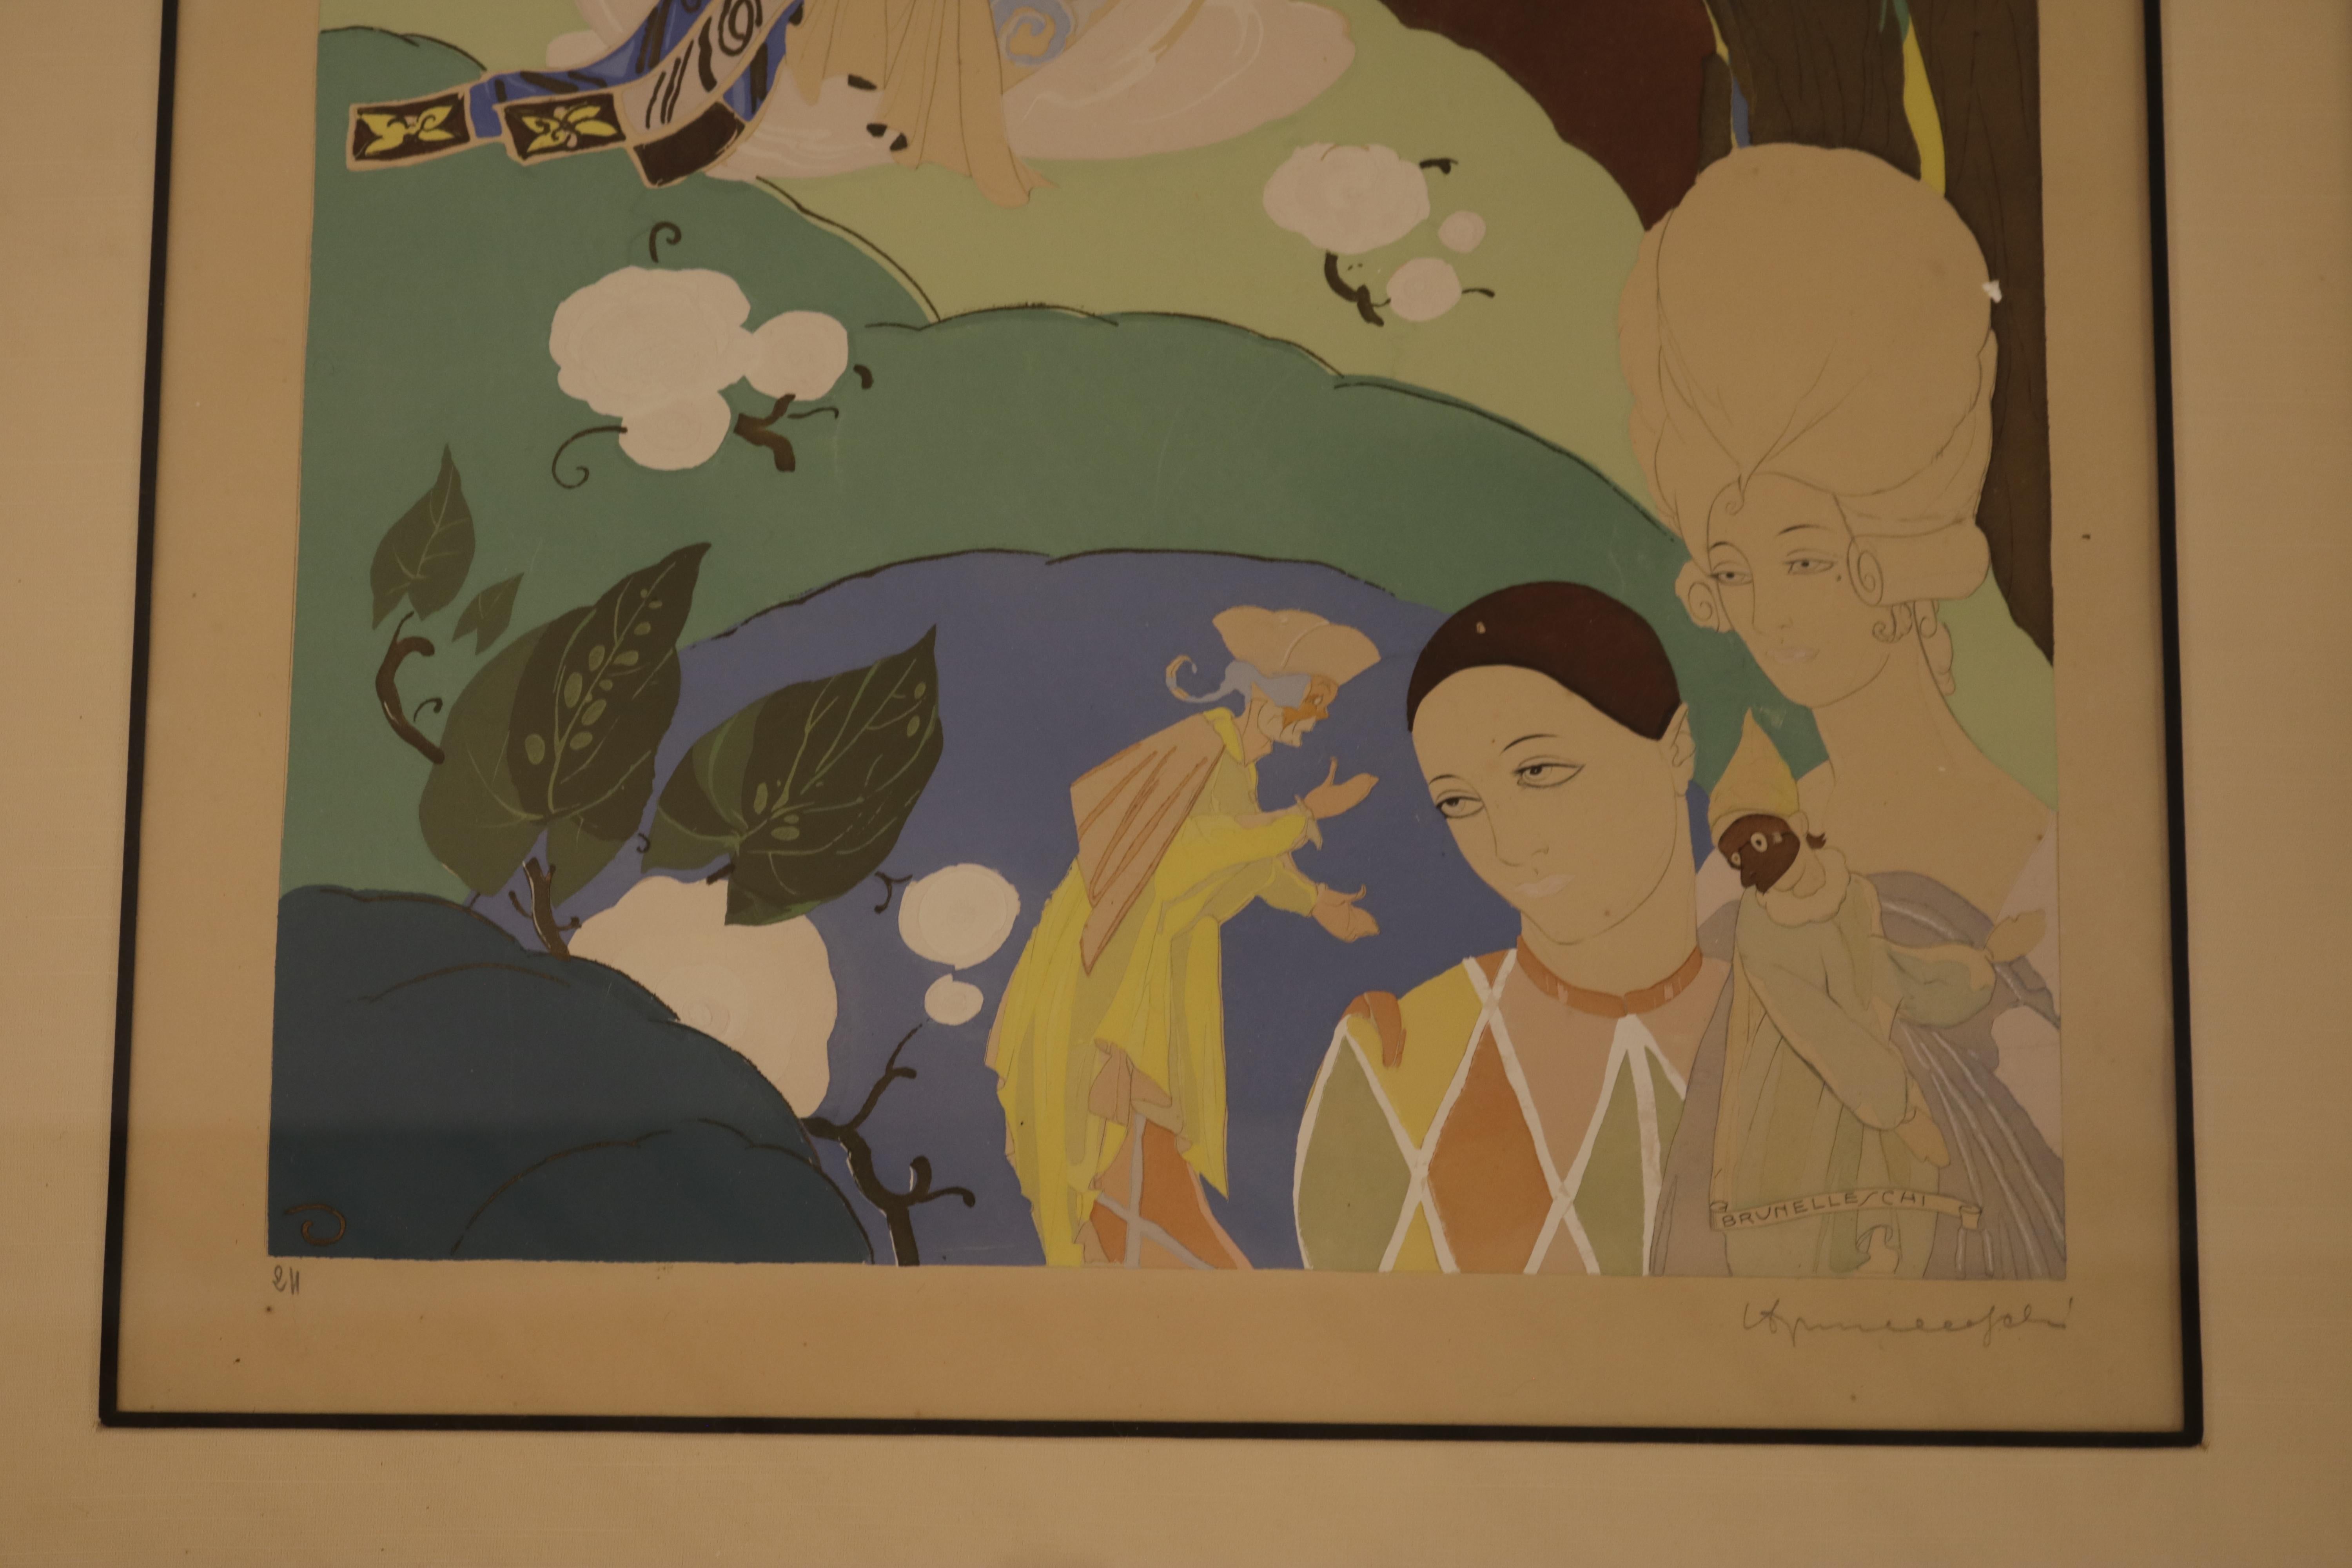 Der Hintergrund dieser aufwendigen Lithografie und Aquarellmalerei aus Frankreich zeigt eine Geisha, die ein Musikinstrument spielt, während im Vordergrund ein Harlekin und zwei Frauen in eher westlicher Kleidung und mit Make-up zu sehen sind. Der